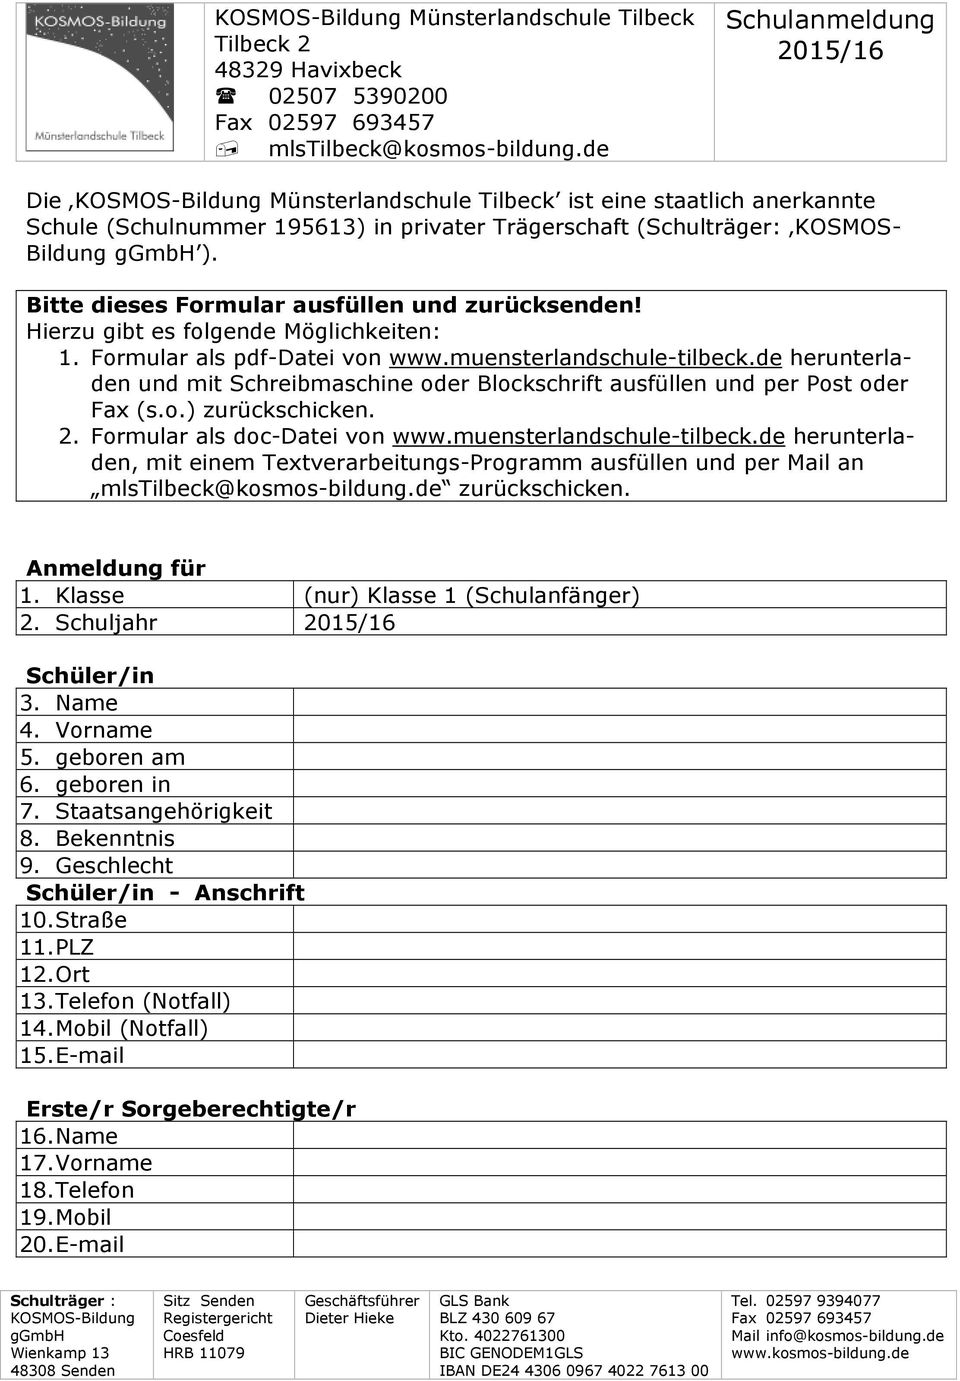 Bitte dieses Formular ausfüllen und zurücksenden! Hierzu gibt es folgende Möglichkeiten: 1. Formular als pdf-datei von www.muensterlandschule-tilbeck.